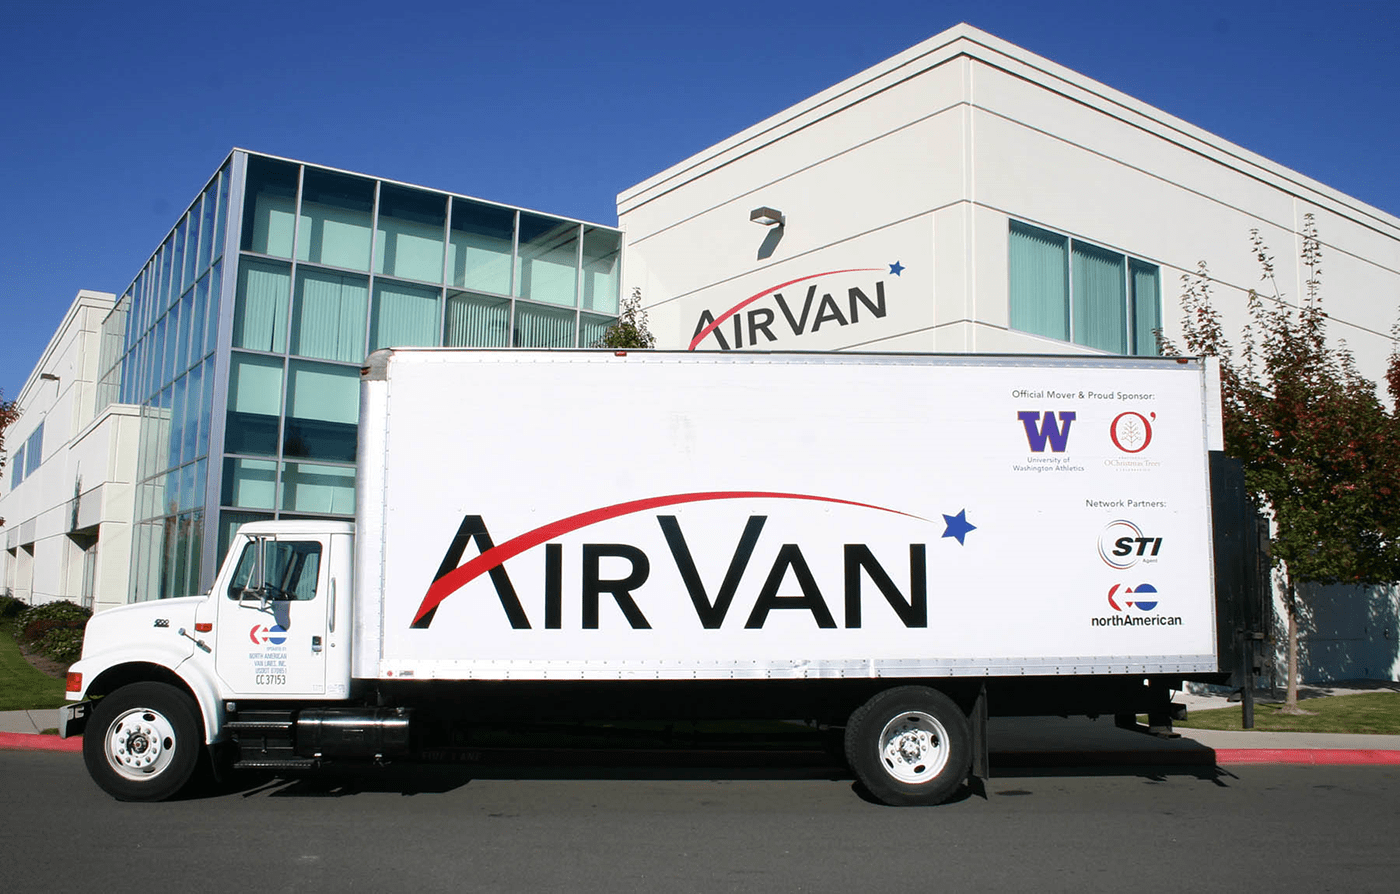 (c) Airvanmoving.com